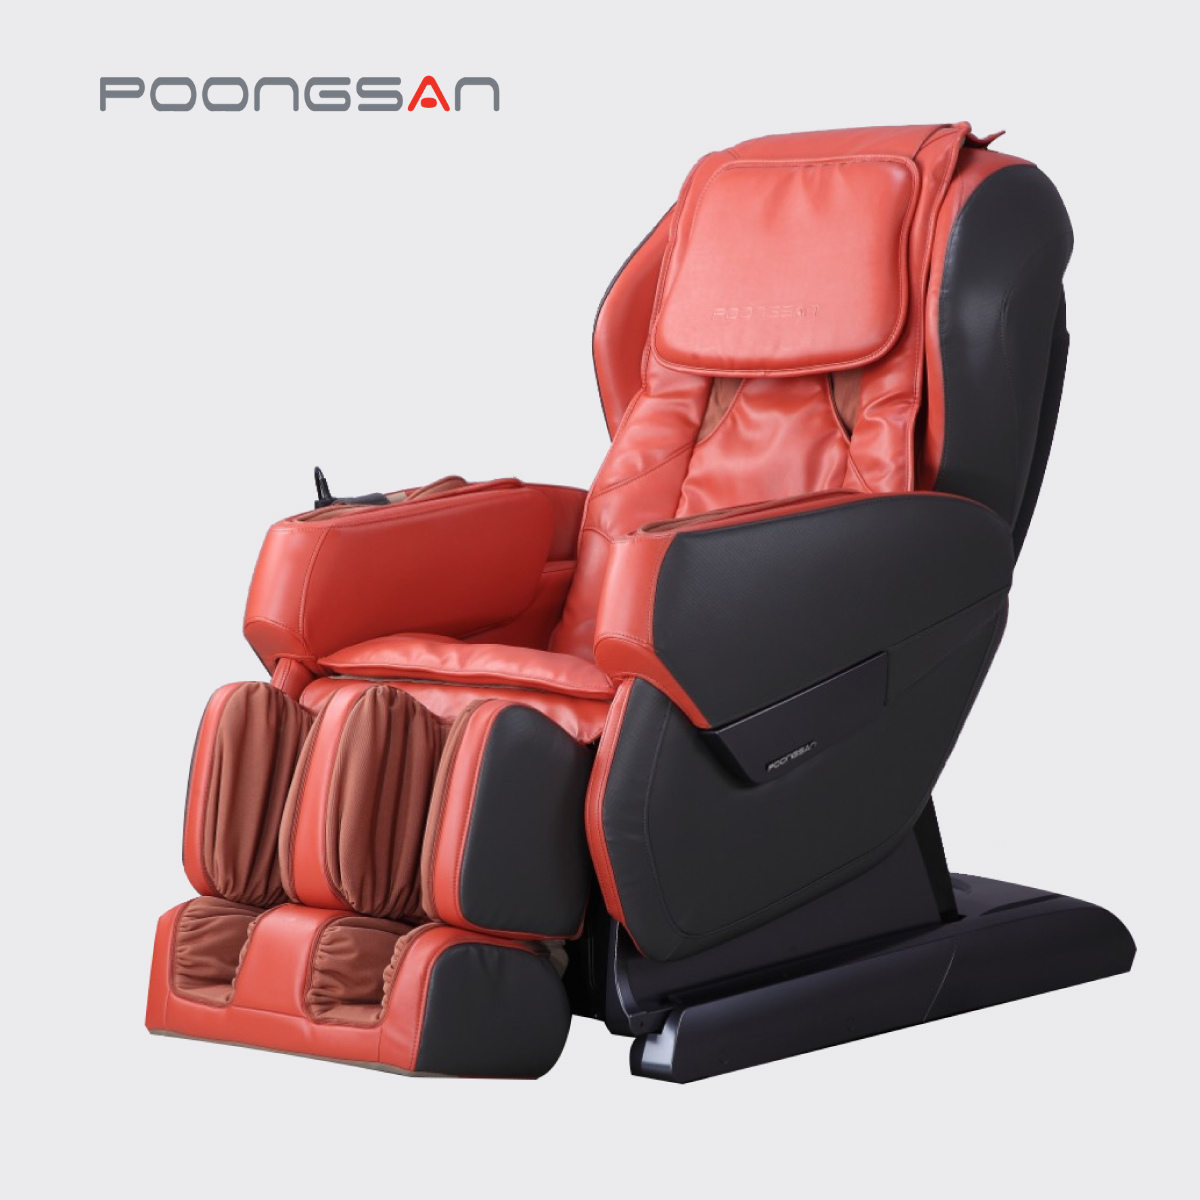 Ghế massage Poongsan mang lại cảm giác thư giãn dễ chịu nhất